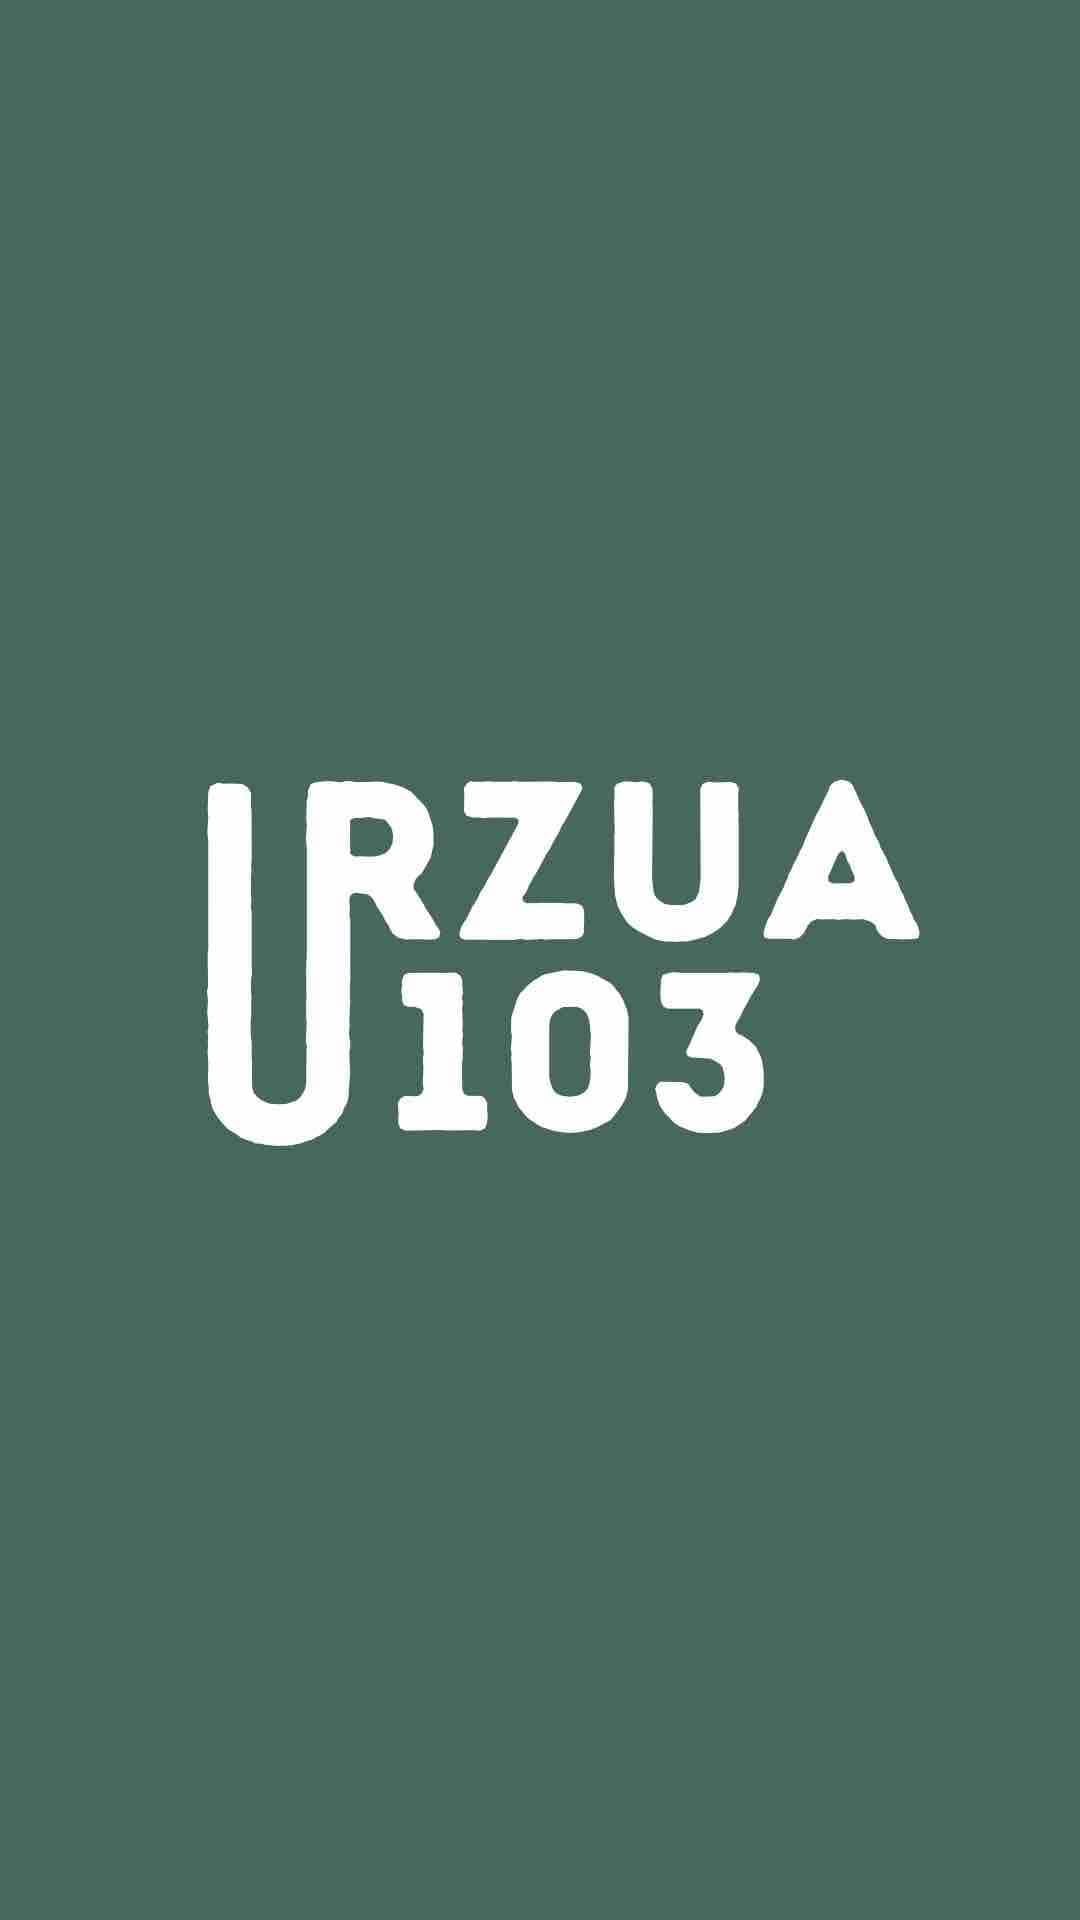 Urzua 103, experiencia única en Lota, Chile